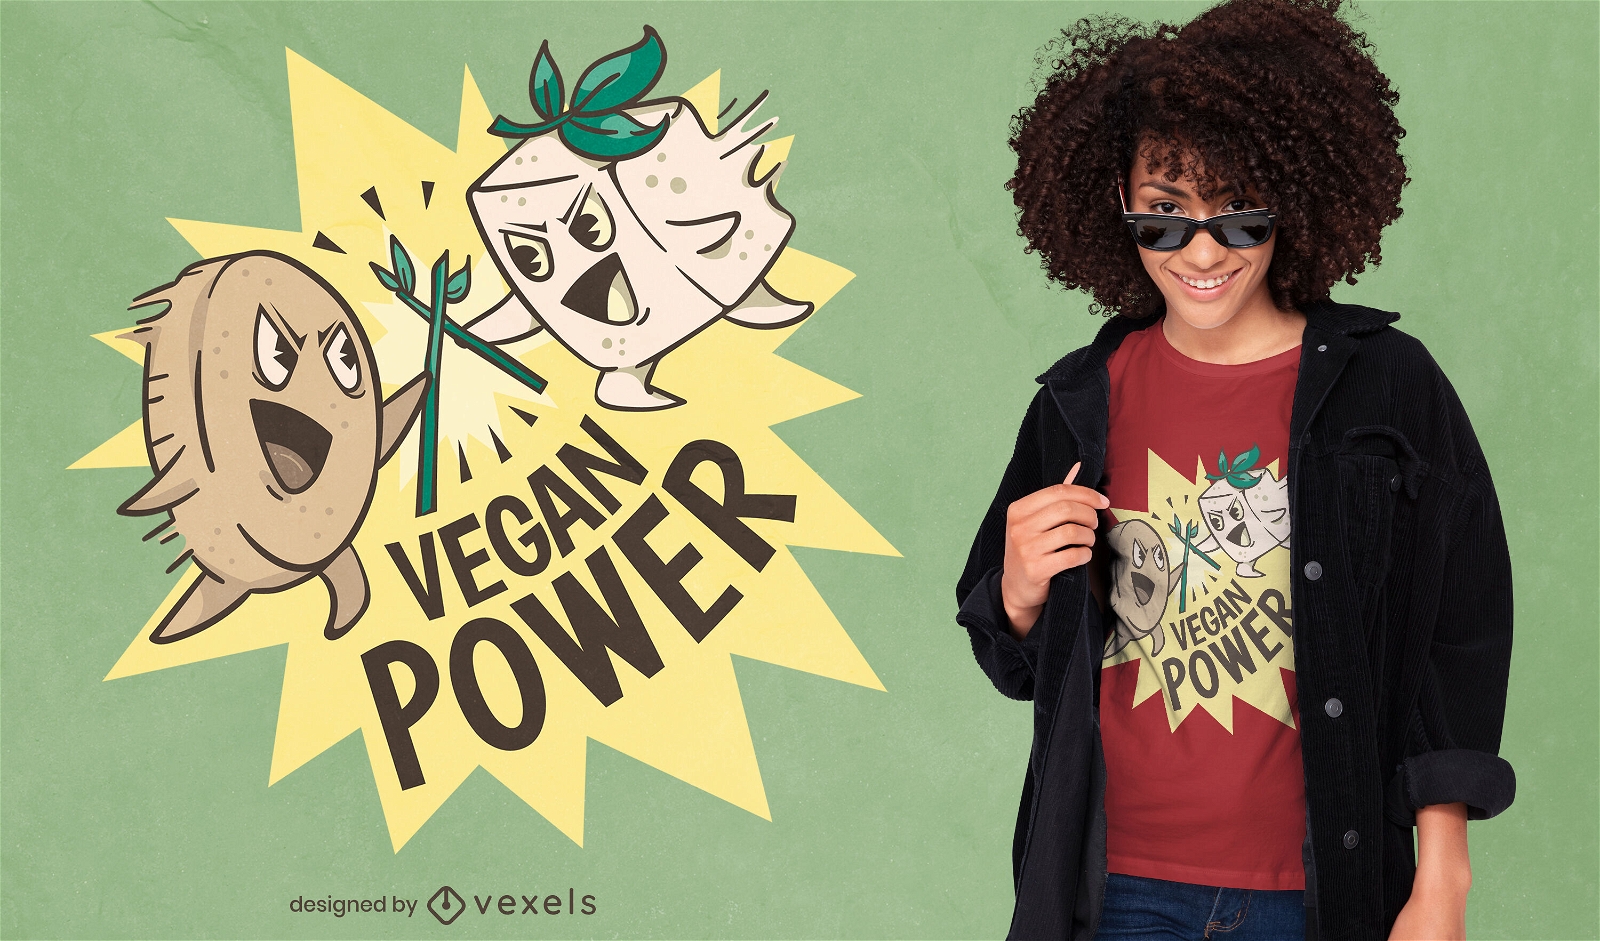 Dise?o de camiseta de personajes de poder vegano.